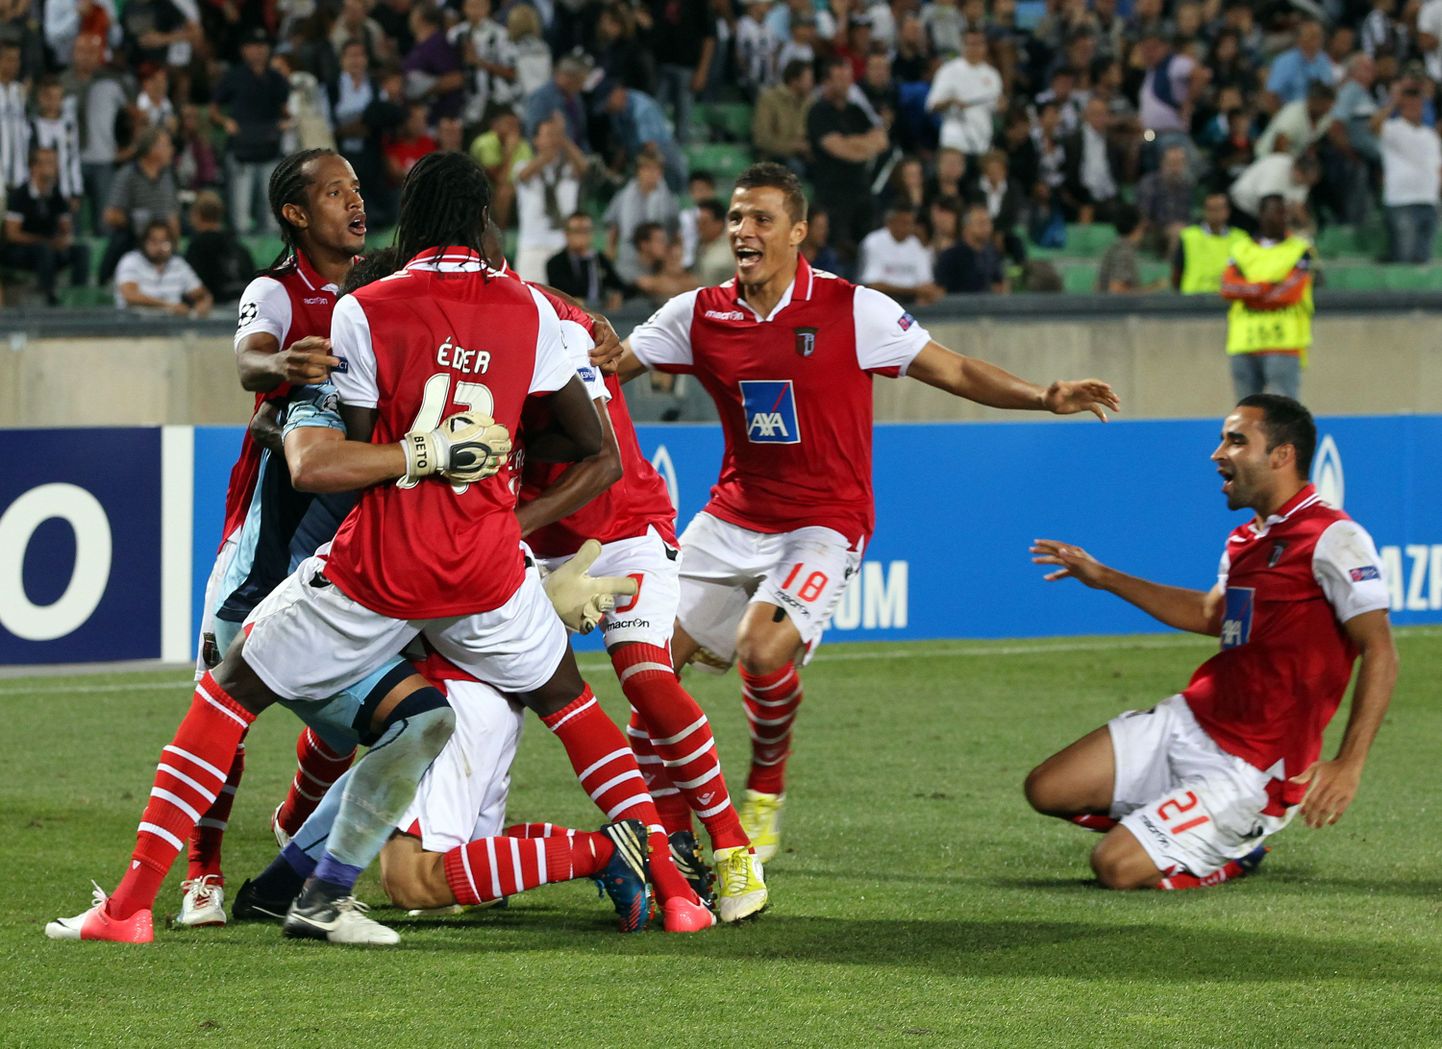 Braga mängijad pärast võidukat penaltiseeriat.